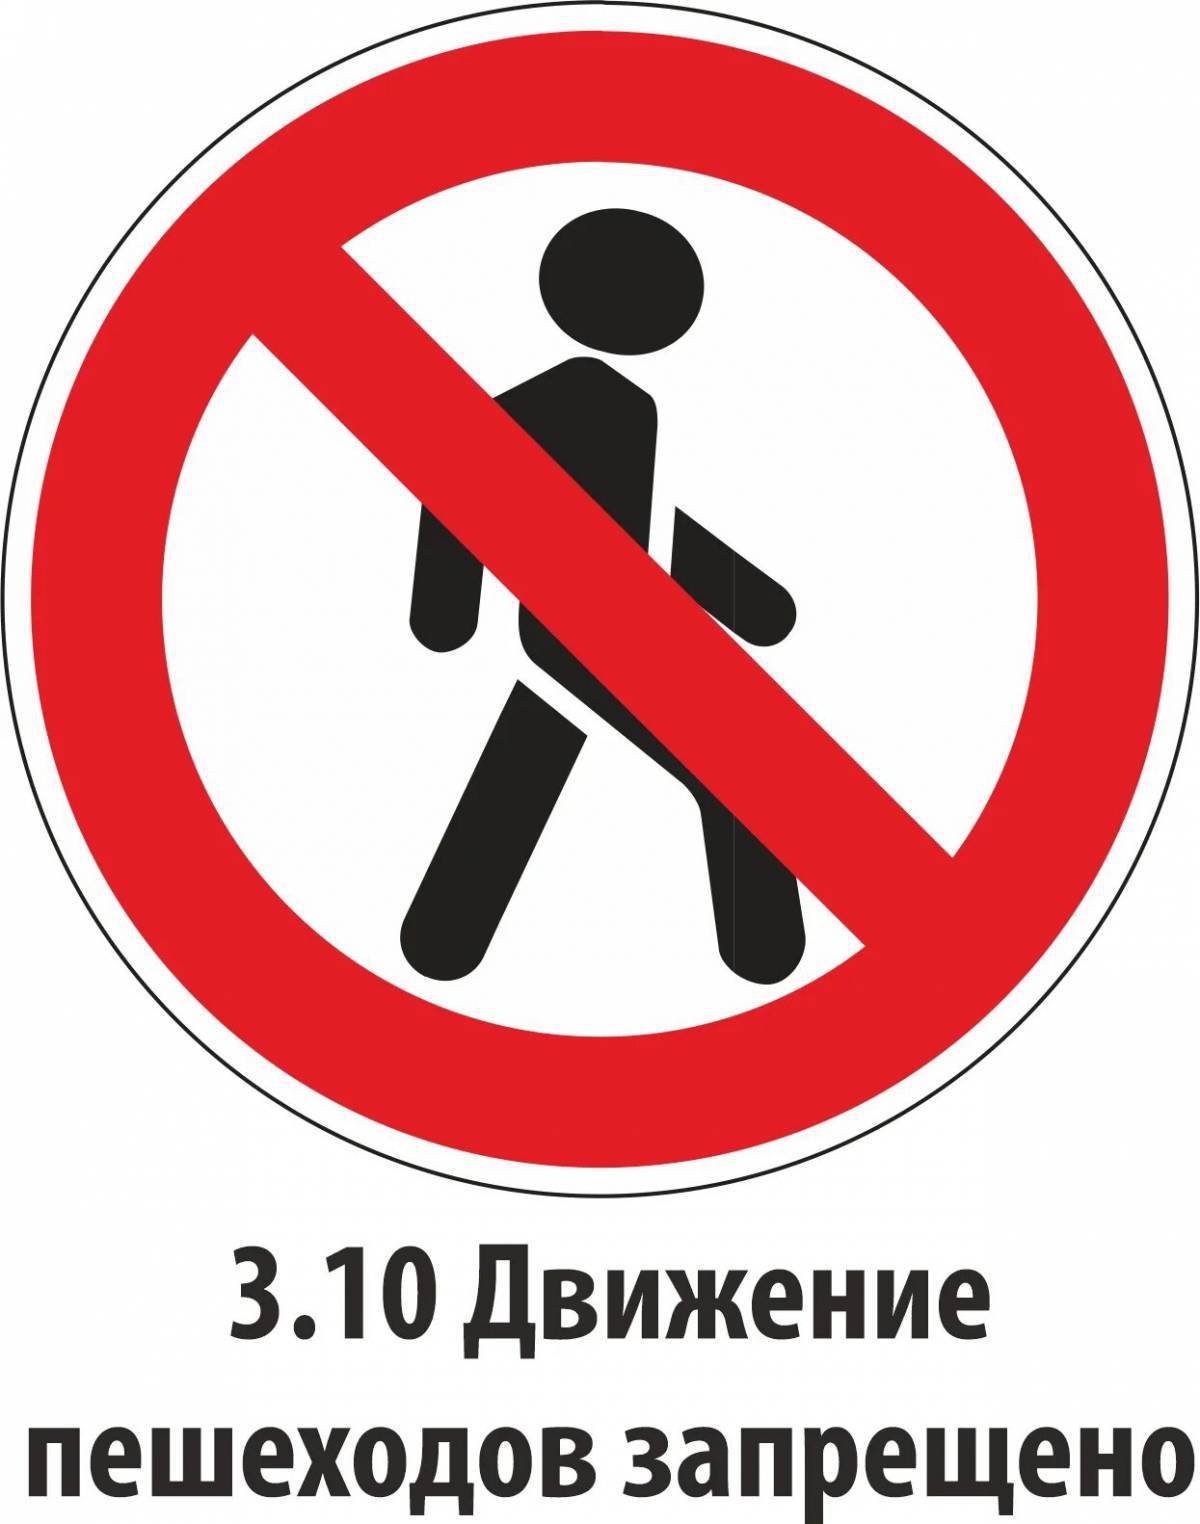 Знак движение пешеходов запрещено #16